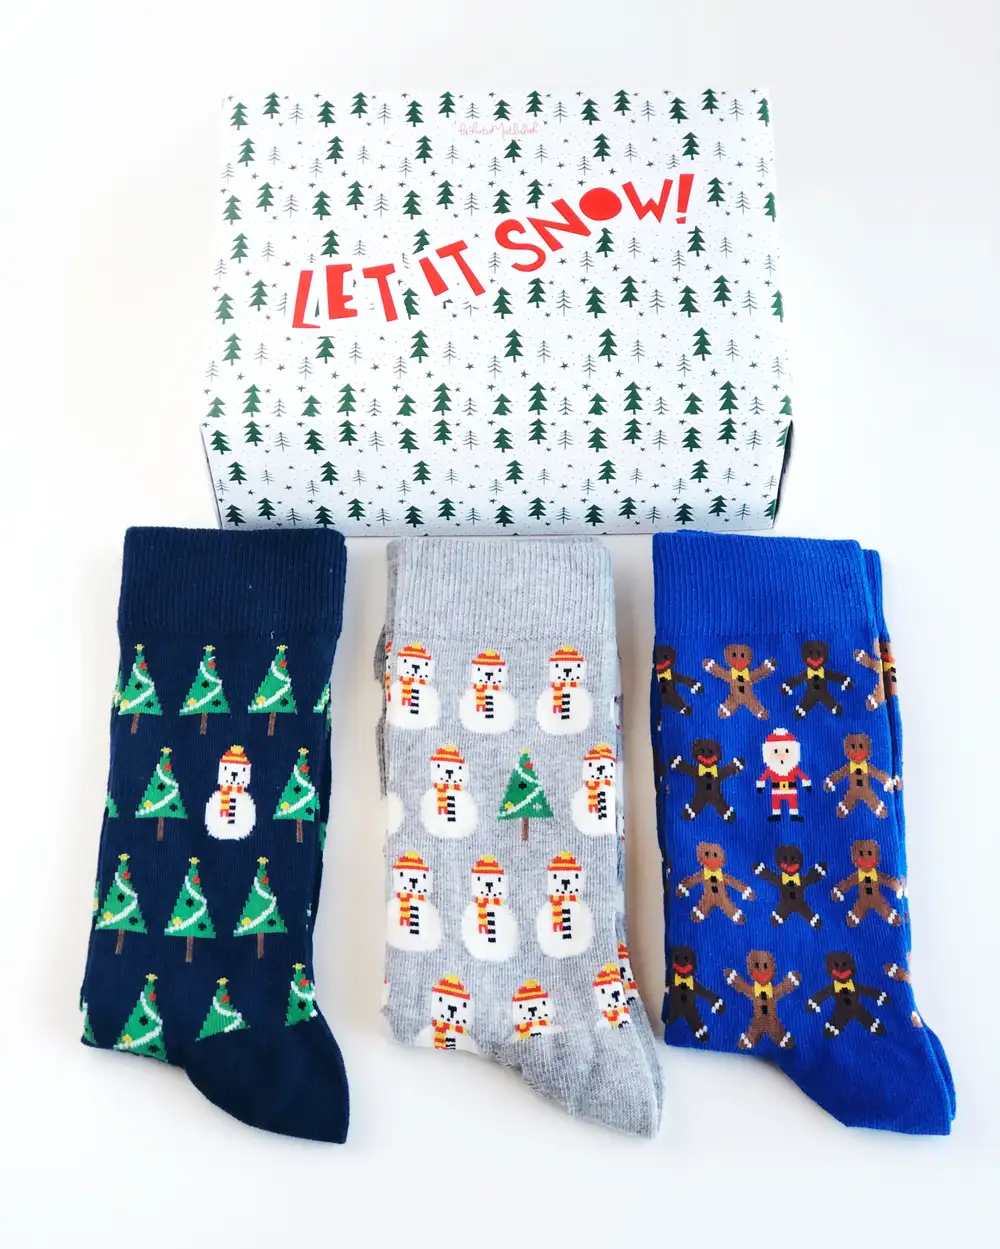 3lü çorap ve Let it snow Yılbaşı hediye kutusu seti